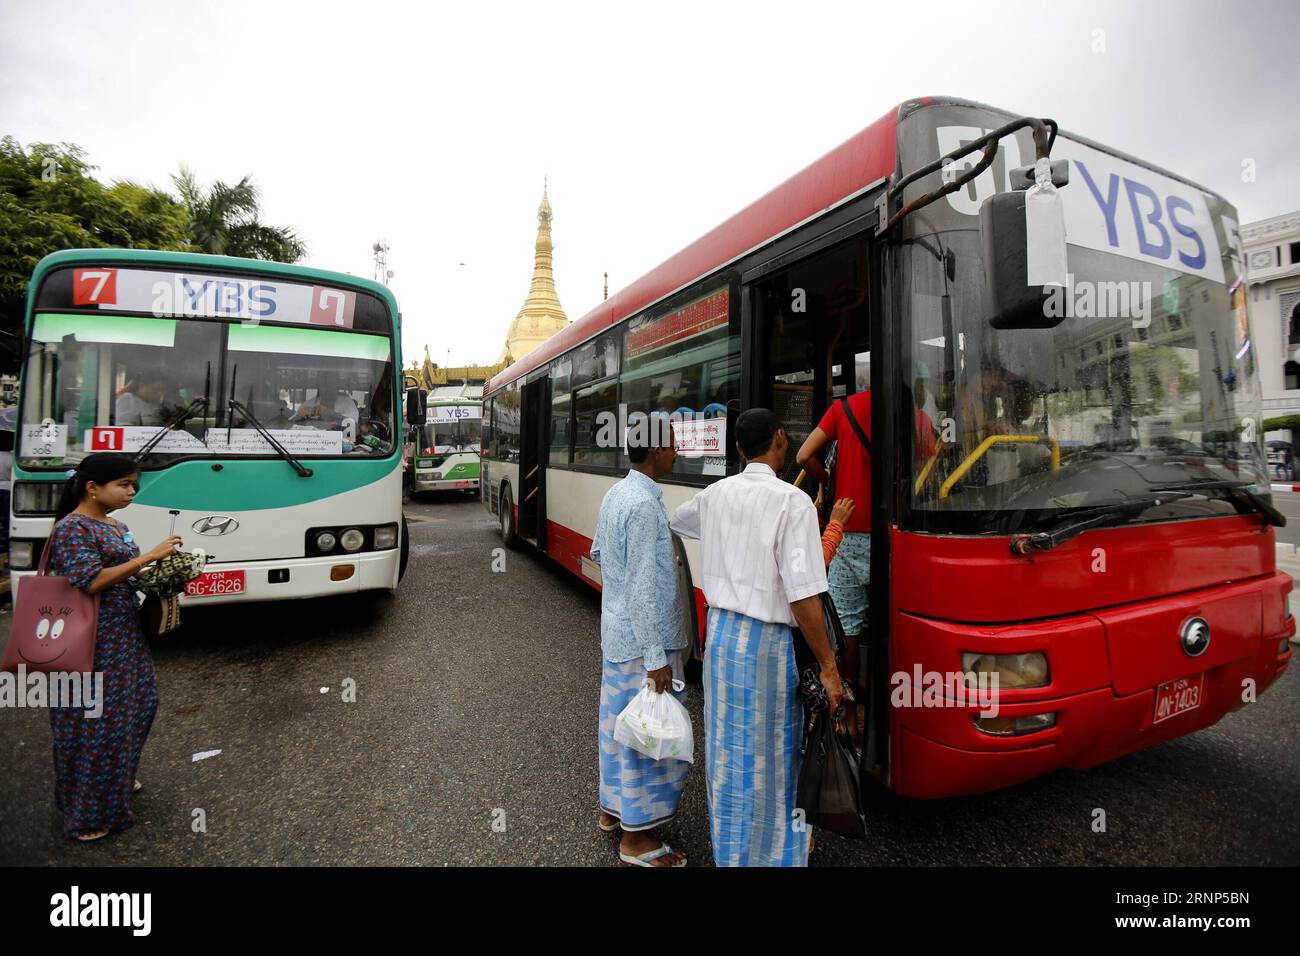 (170811) --, 11. August 2017 -- Passagiere steigen am 11. August 2017 in einen in China hergestellten Bus of Bus Service (YBS) in der Innenstadt von Myanmar. U Aung) (dtf) MYANMAR--YBS-CHINA yangon PUBLICATIONxNOTxINxCHN 170811 Aug 11 2017 Passagiere steigen in einen in China hergestellten Bus of Bus Service YBS in der Innenstadt Myanmars AM 11 Aug 2017 U Aung dtf Myanmar YBS China Yangon PUBLICATIONxNOTxINxCHN Stockfoto